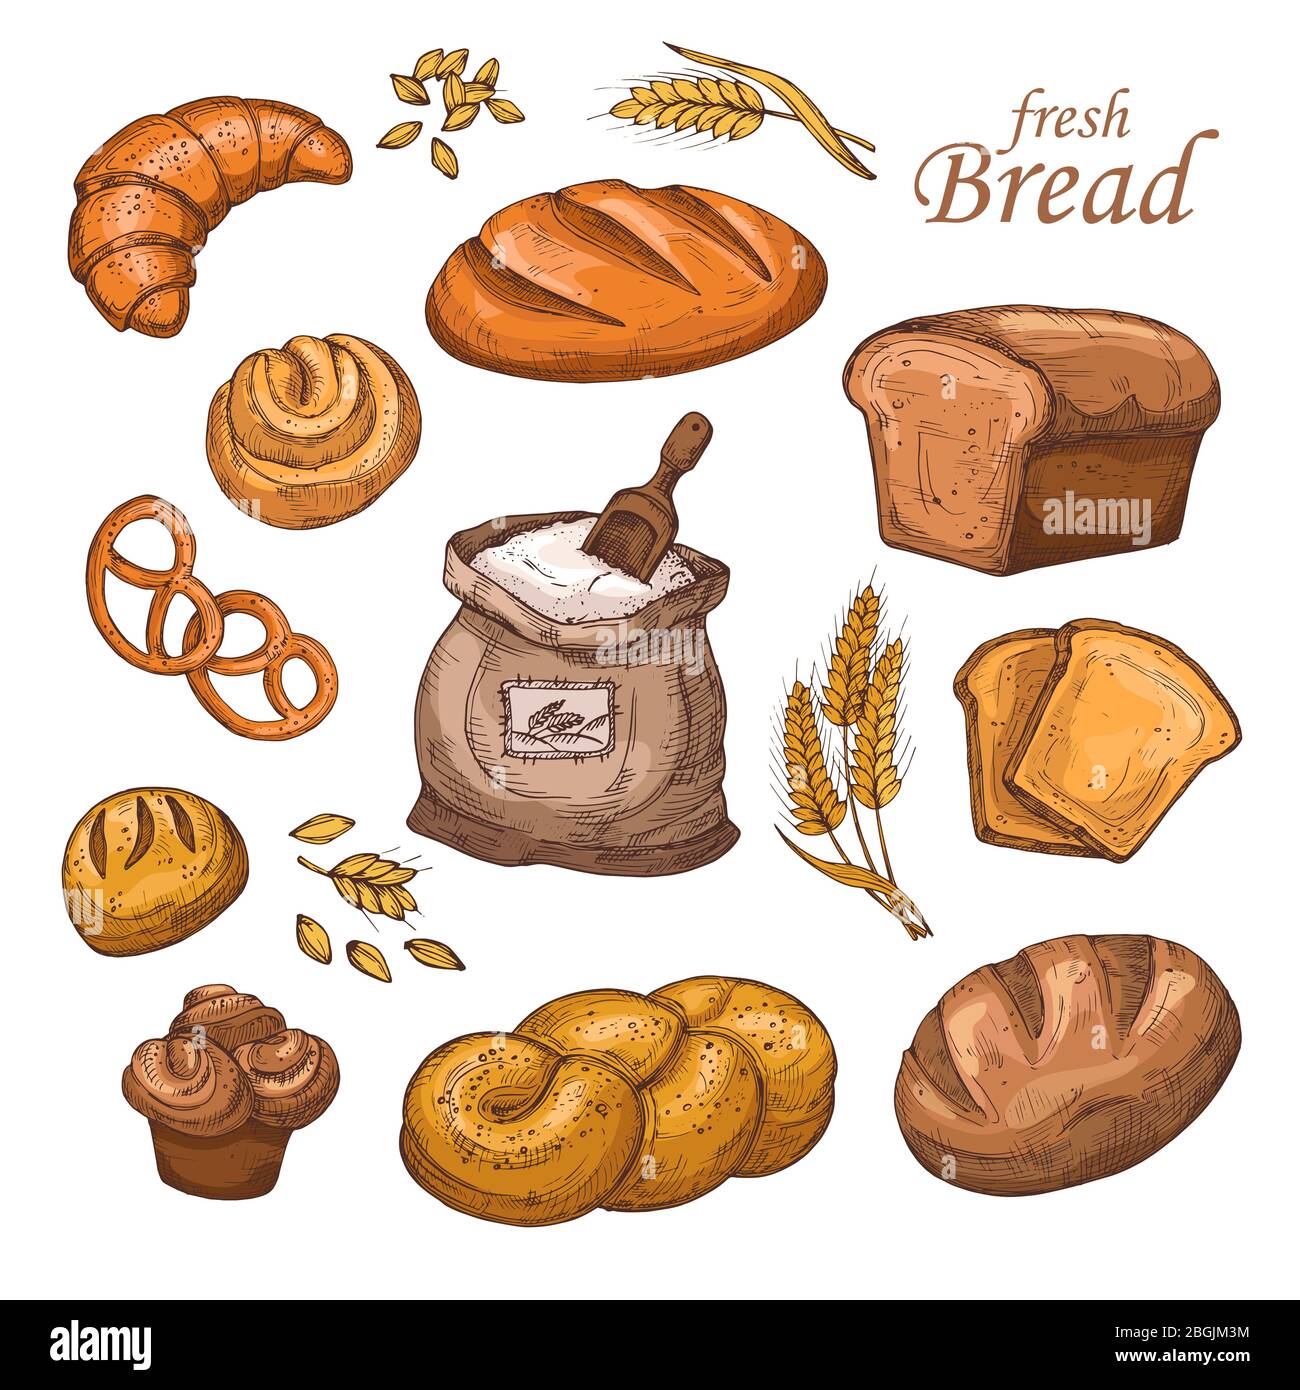 Pain de dessin animé, produit de boulangerie frais, farine, oreilles de blé. Vecteur dessiné à la main isolé sur fond blanc. Boulangerie à pain, farine et illustration de pain Illustration de Vecteur